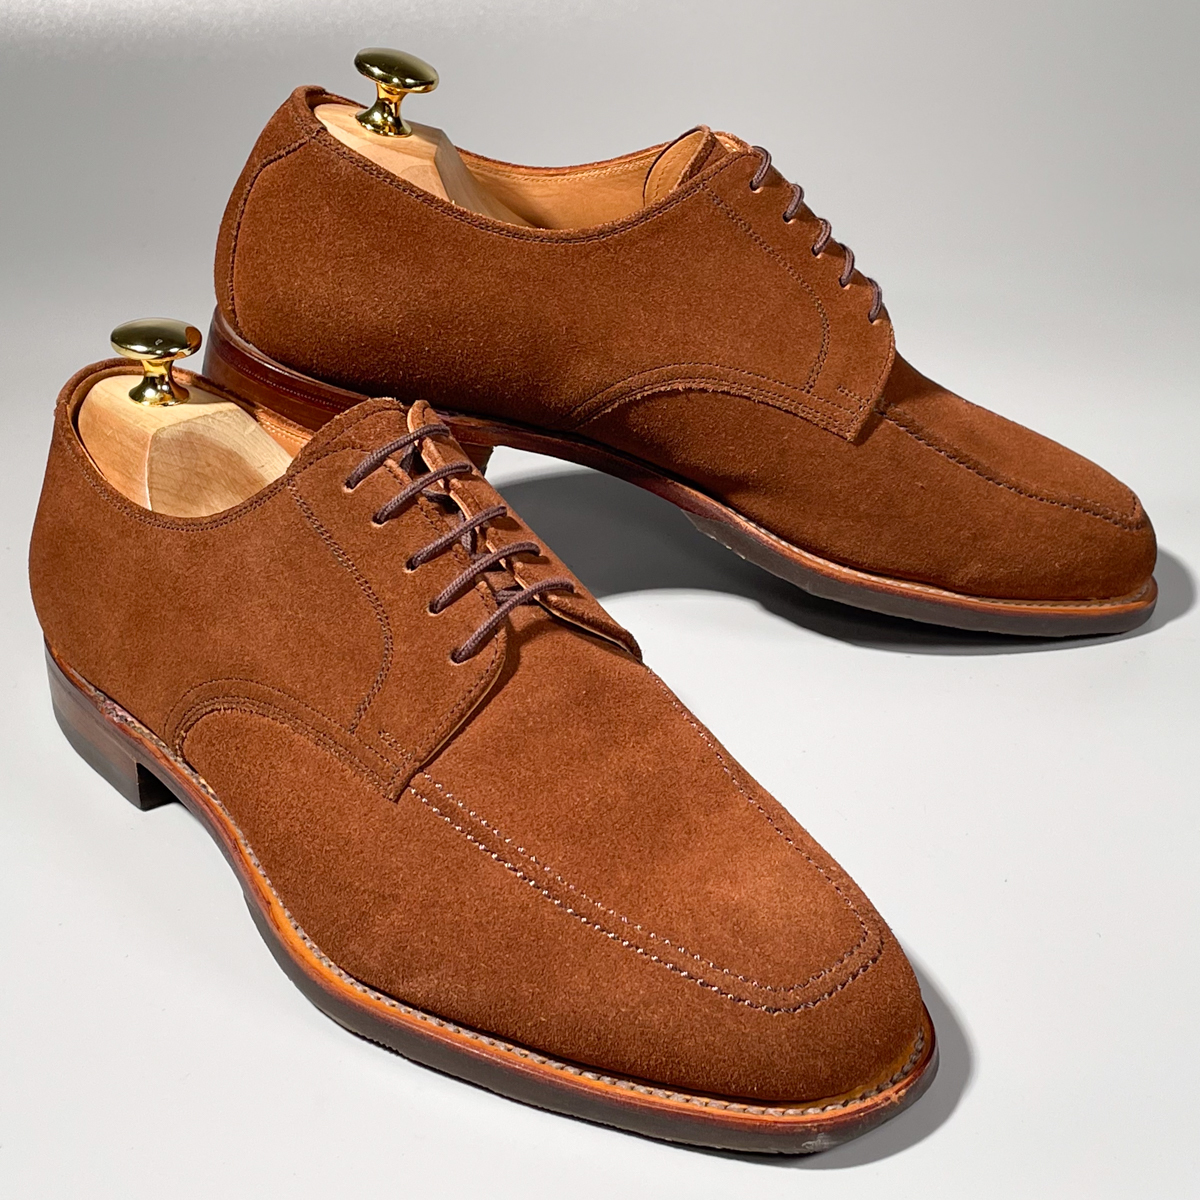  быстрое решение SCOTCH GRAIN Scotch серый nU chip Brown чай цвет мужской натуральная кожа замша кожа обувь 25cm бизнес обувь формальный джентльмен обувь A1755